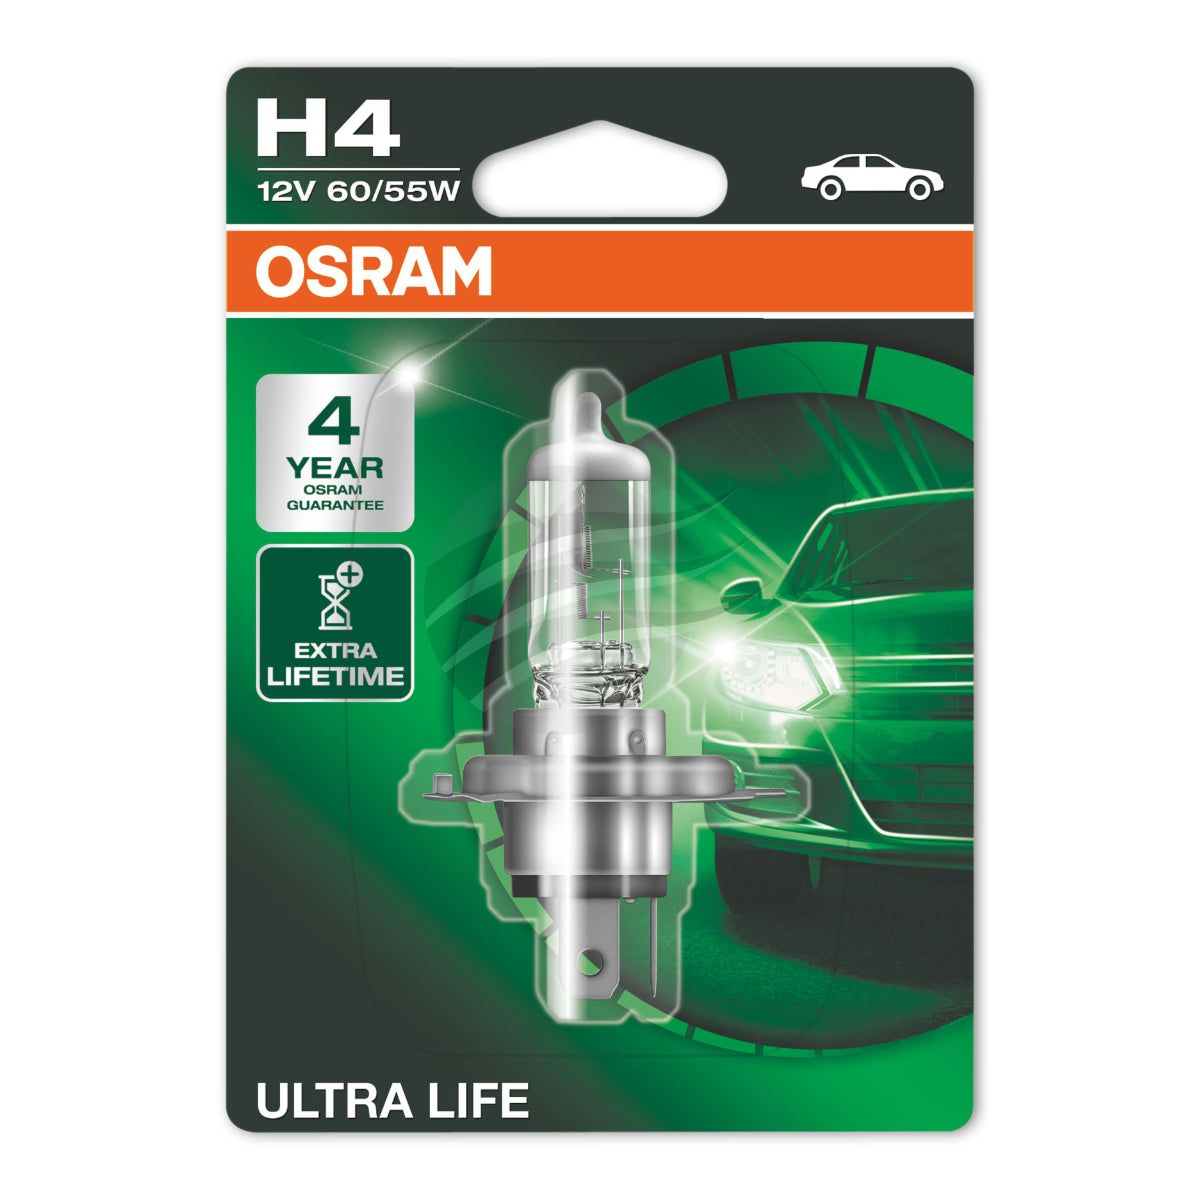 OSRAM - H4 ULTRA LIFE HALOGEN GLOBE 12V 60/55W P43t-38 BASE